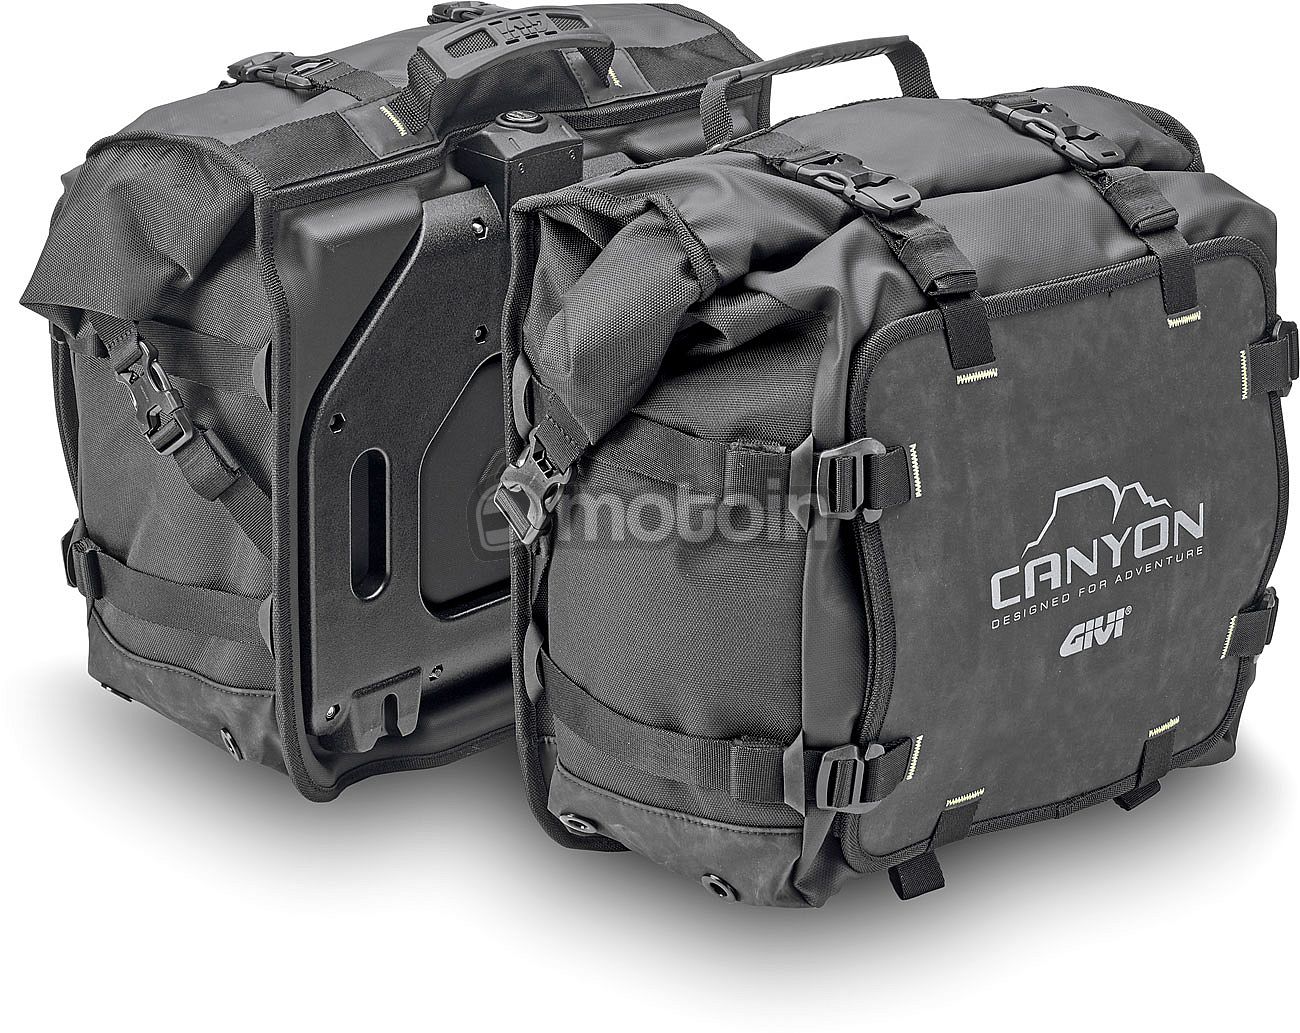 Givi Canyon GRT720 25+25L, sidebags Monokey waterproof - motoin.de